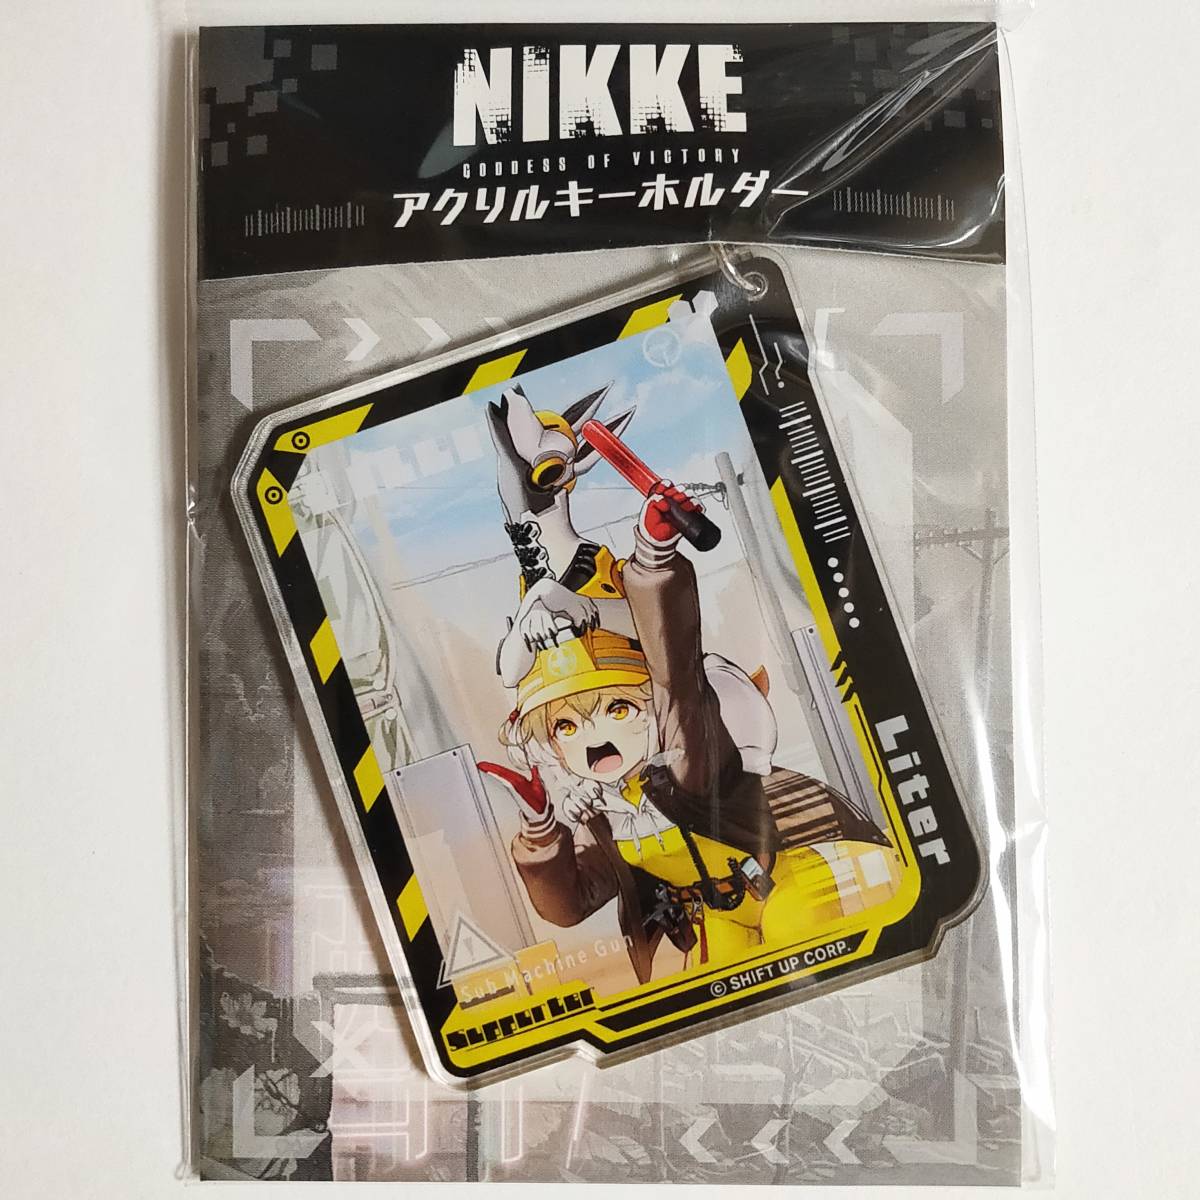 勝利の女神:NIKKE ブロマイド ドラー フェア特典 非売品 ニケ メガニケ